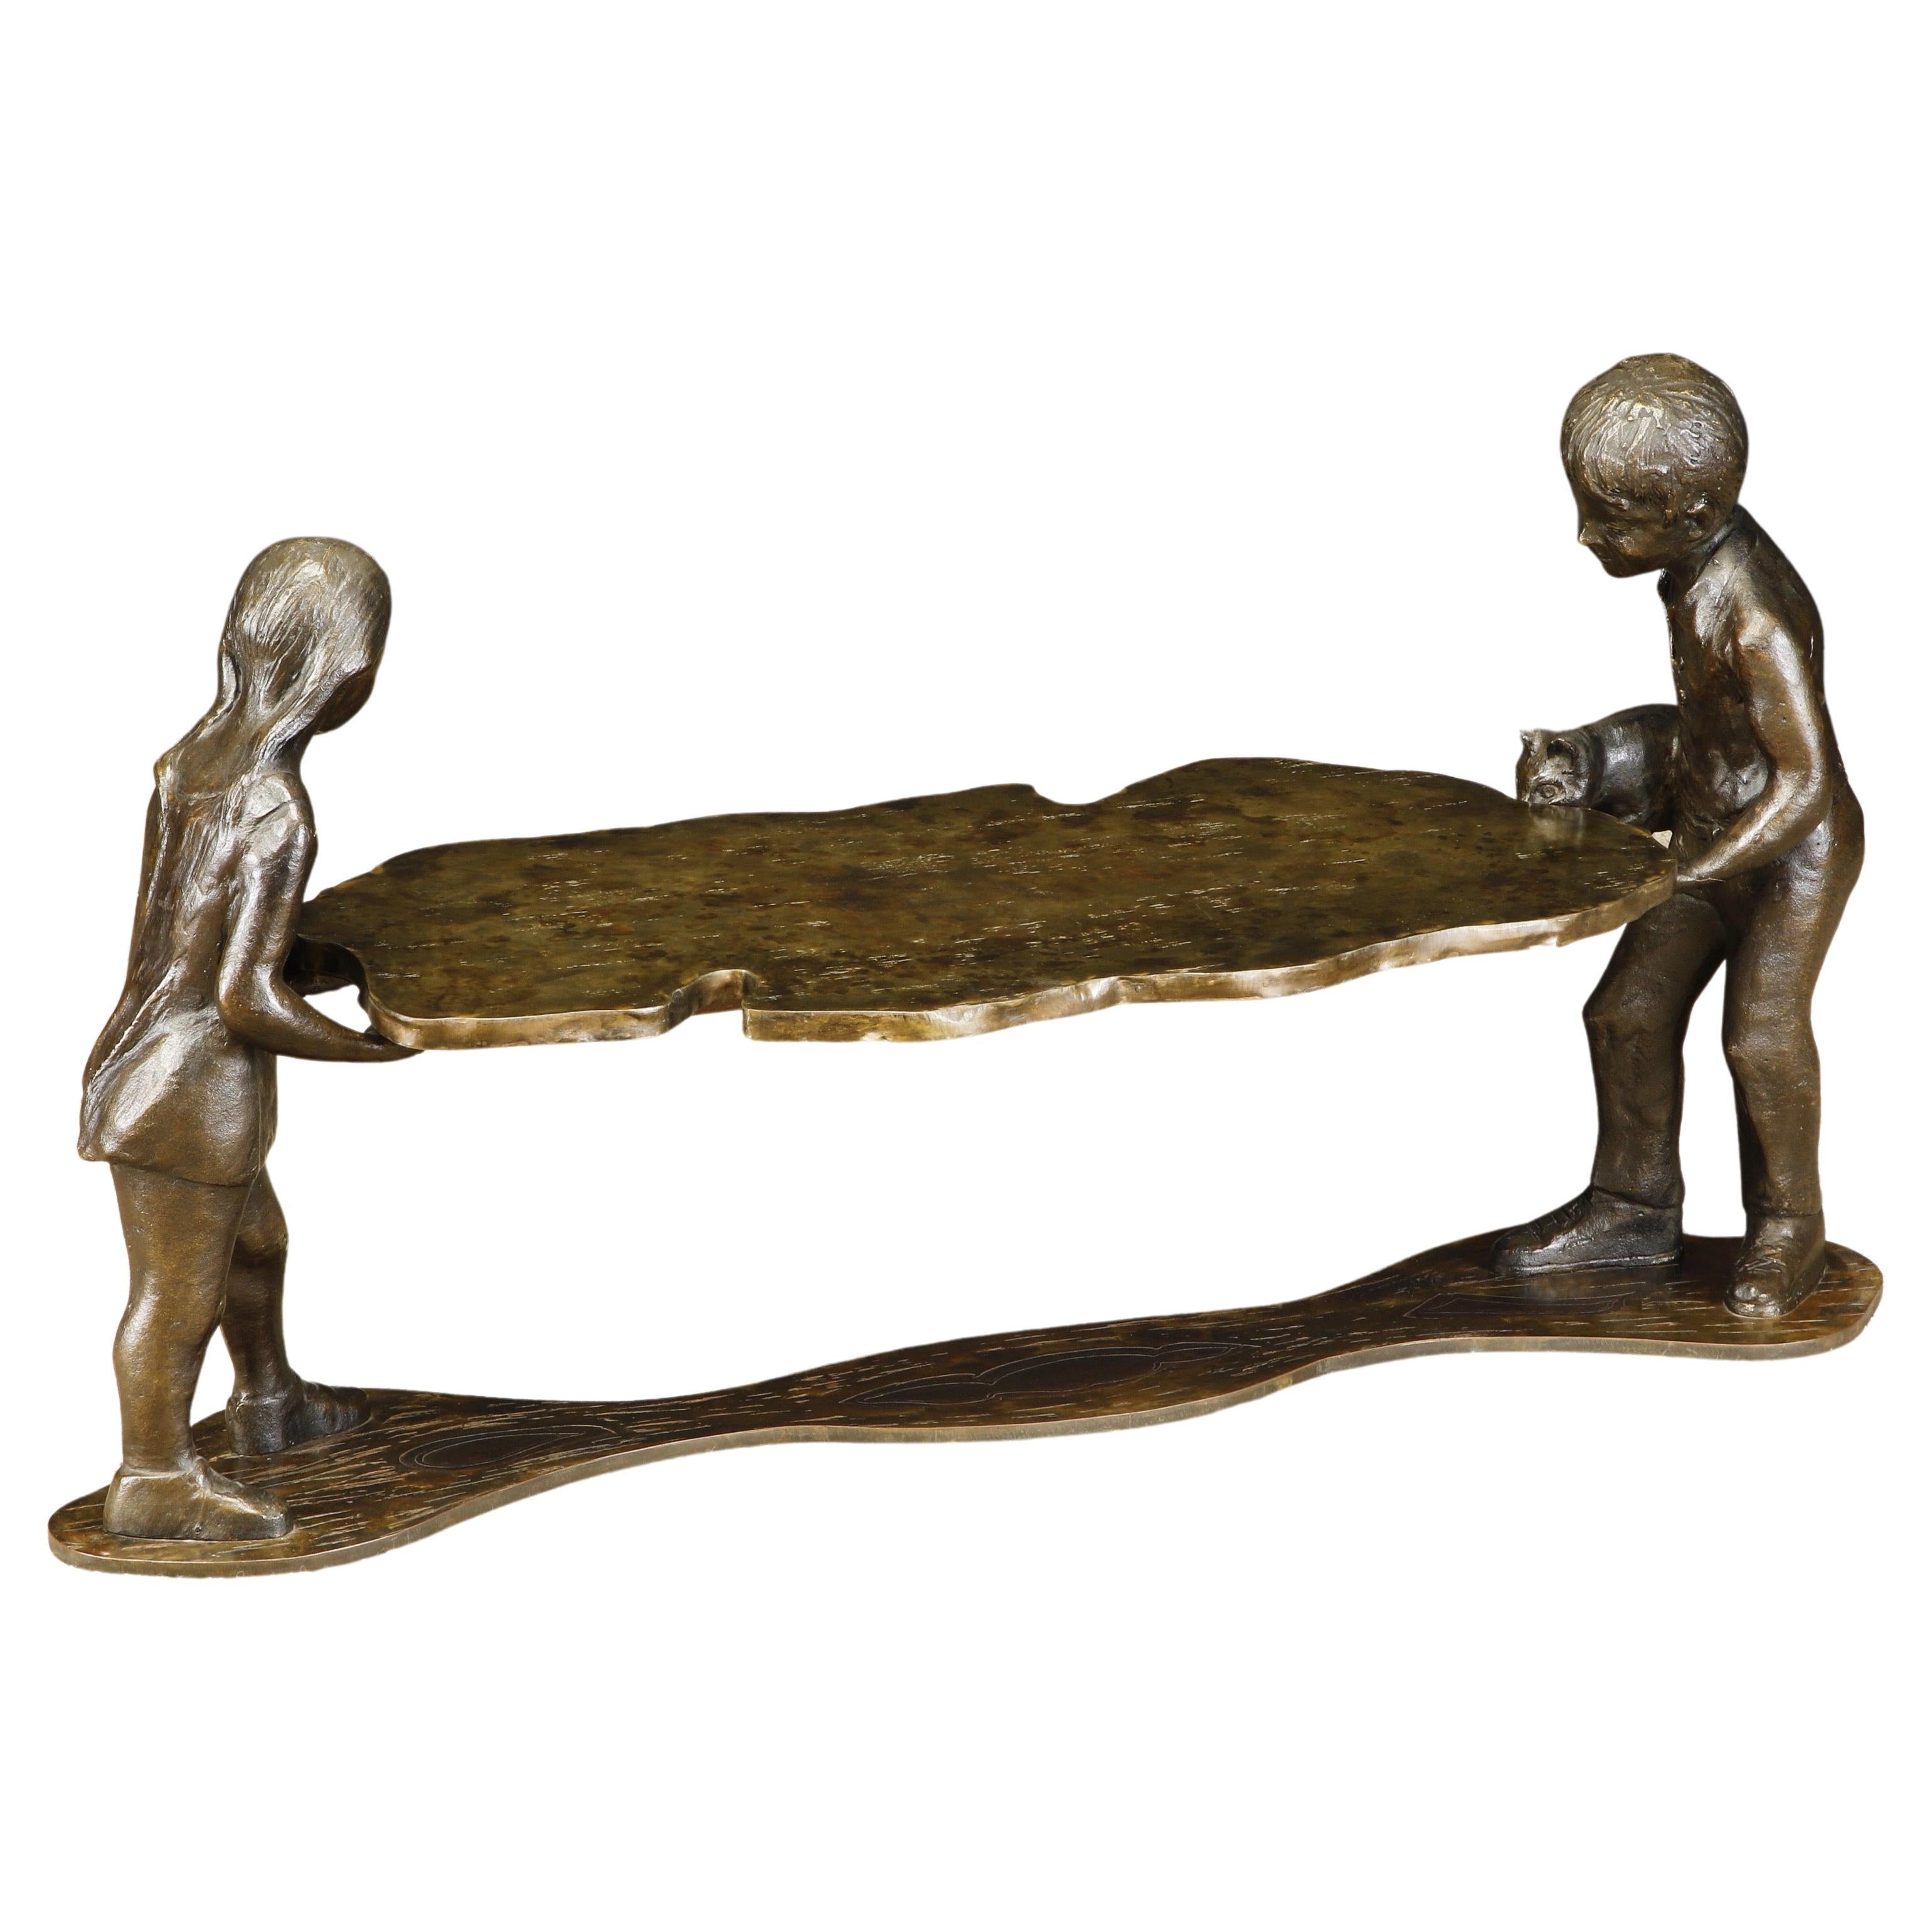 Table sculpture en bronze 'Generation' de Philip et Kelvin LaVerne, datant d'environ 1964, signée